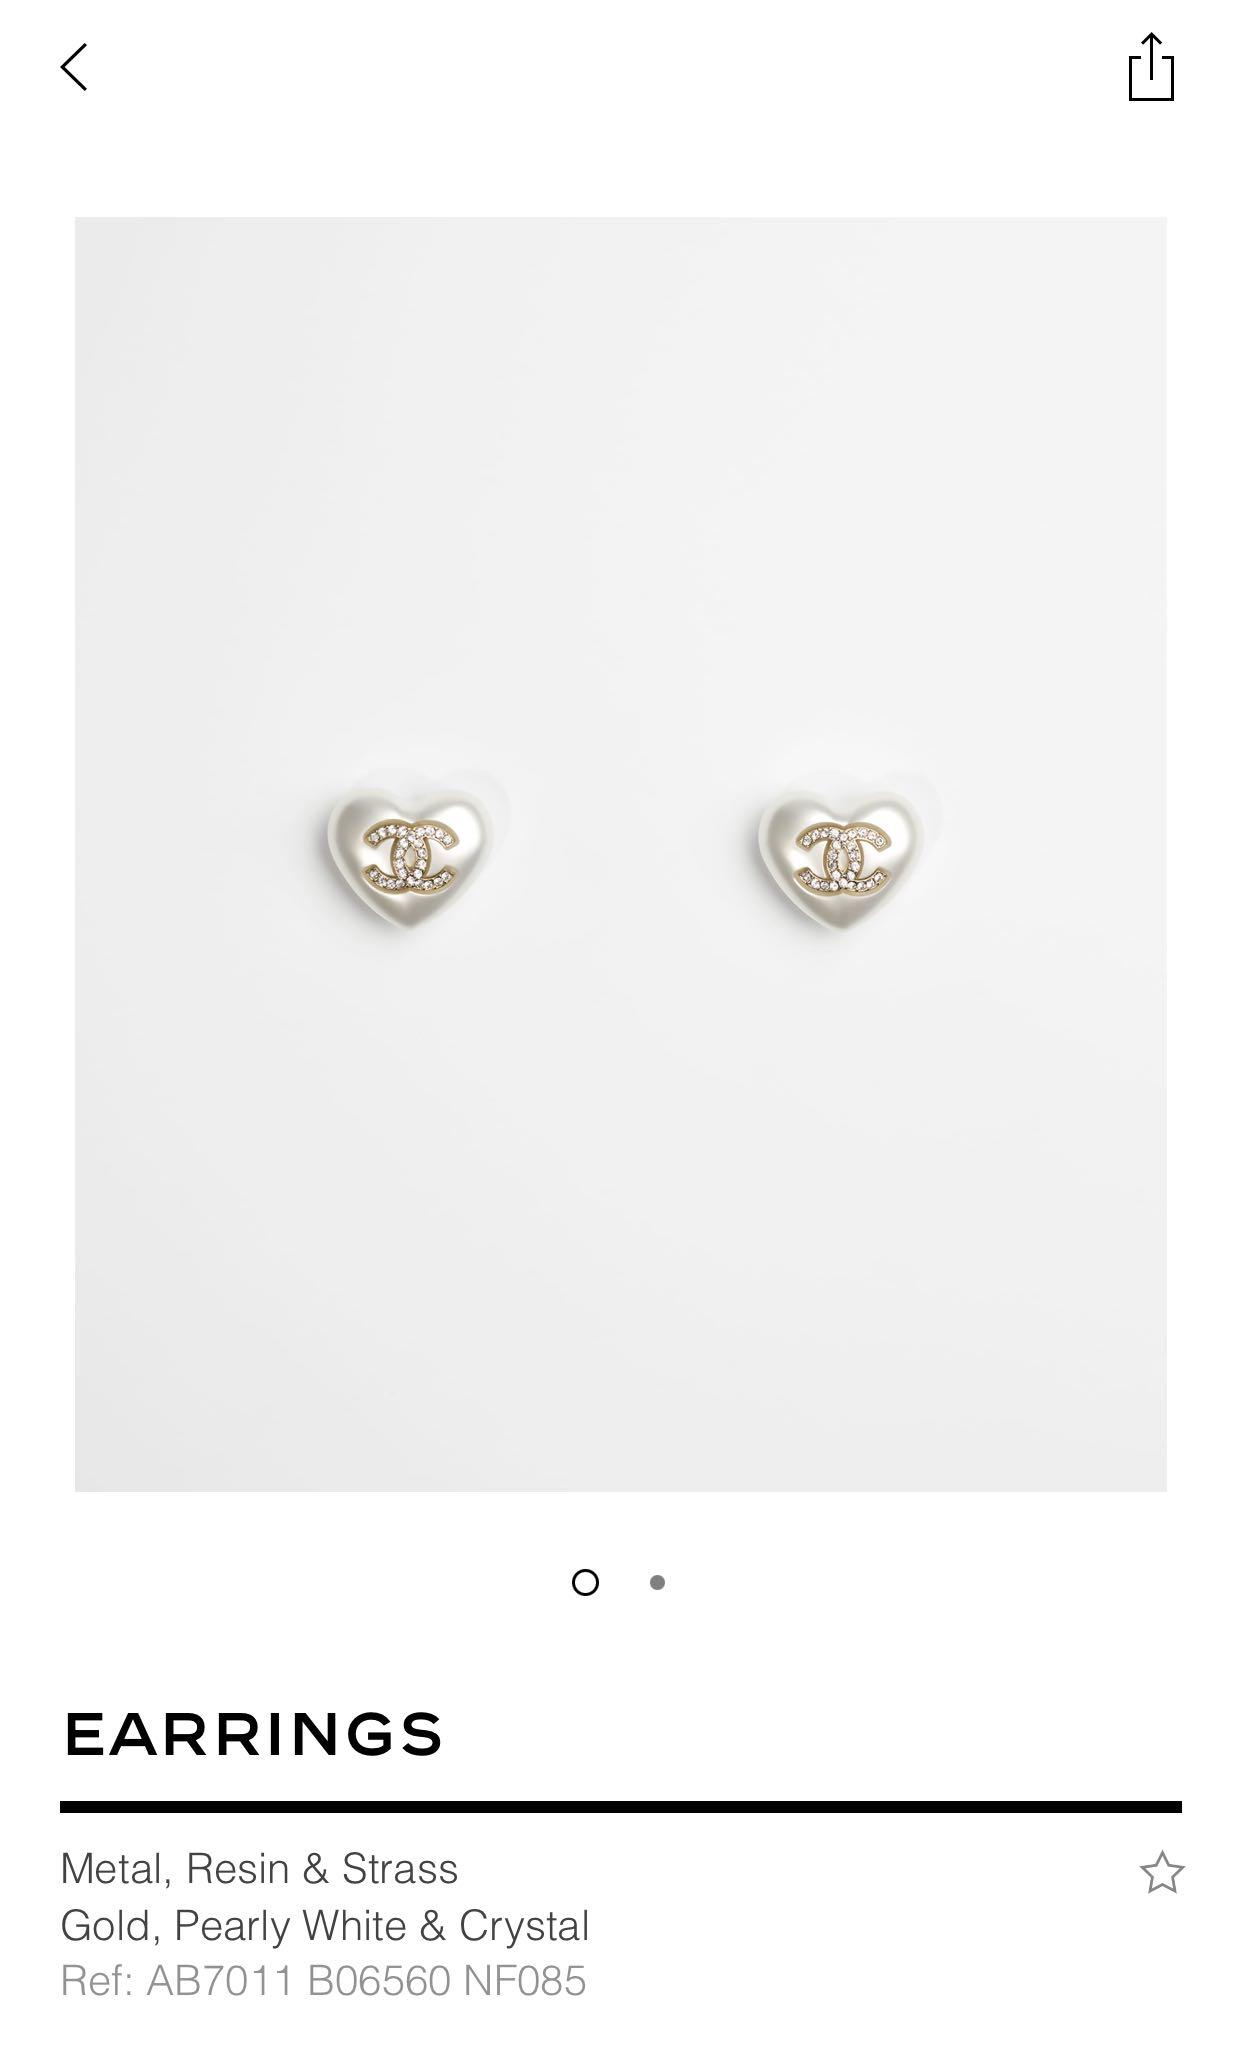 Chanel 21B heart earrings RARE!!, Women's Fashion, Jewelry & Organisers,  Earrings on Carousell